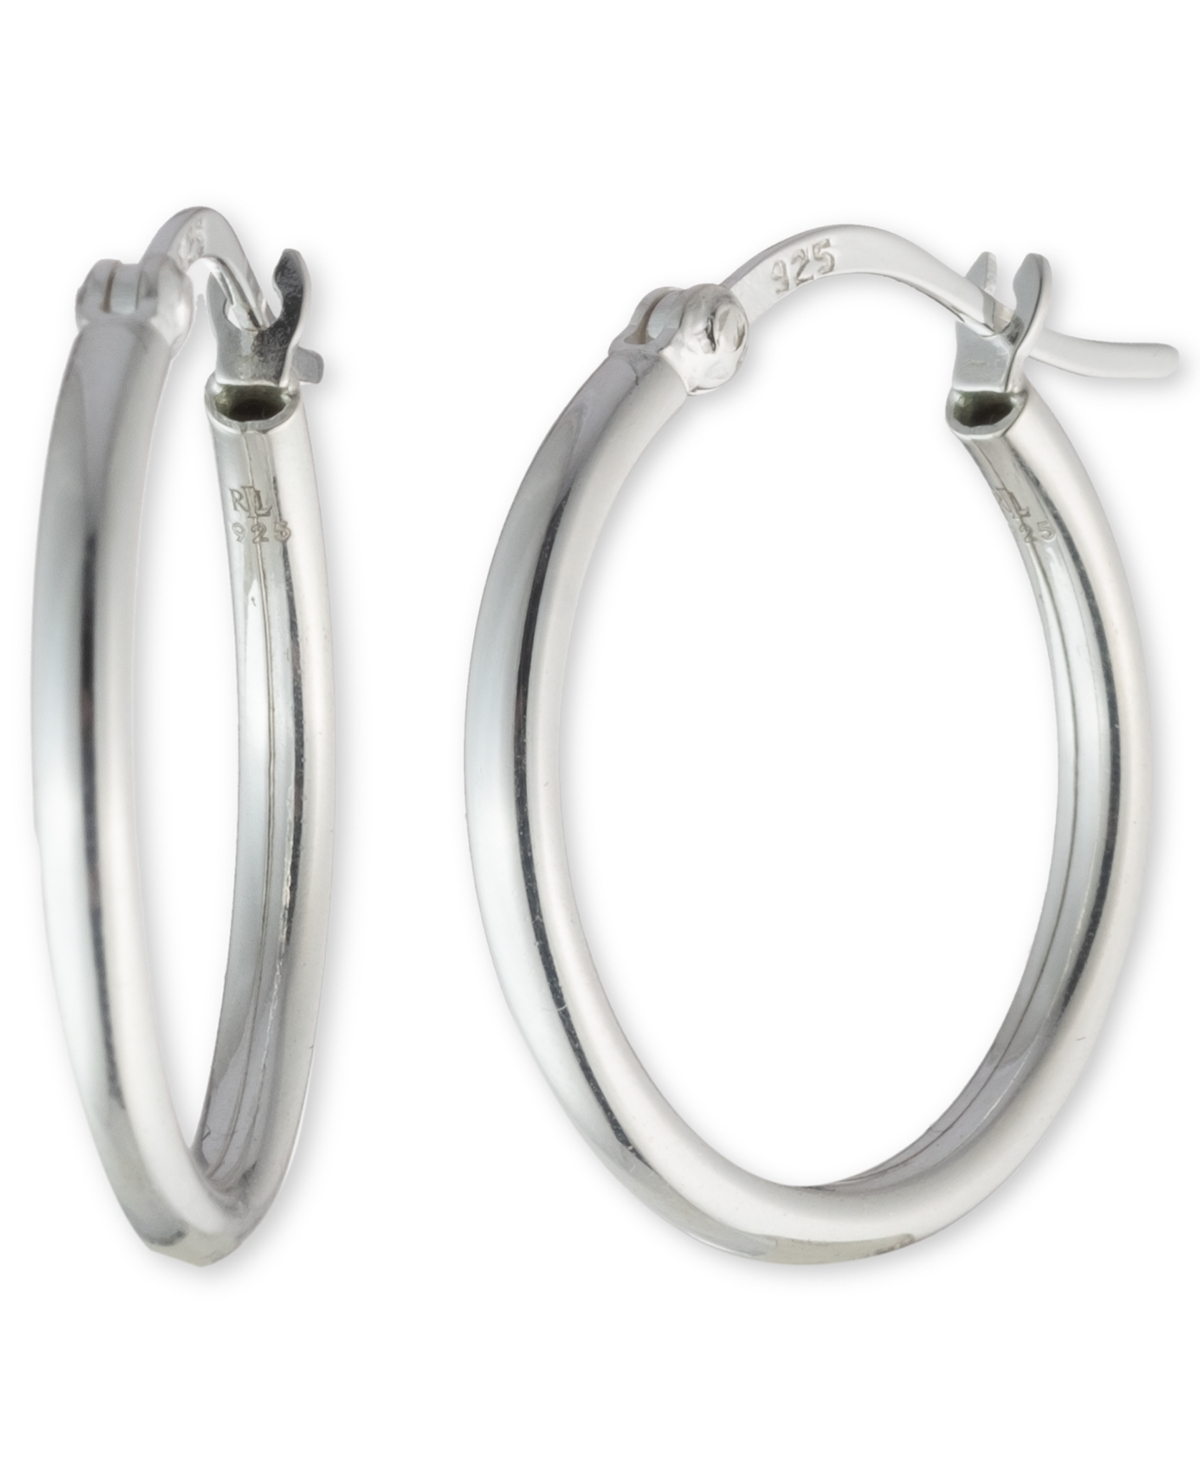 Lauren Ralph Lauren Small Polished Hoop Earrings in Sterling Silver, 1" - Silver